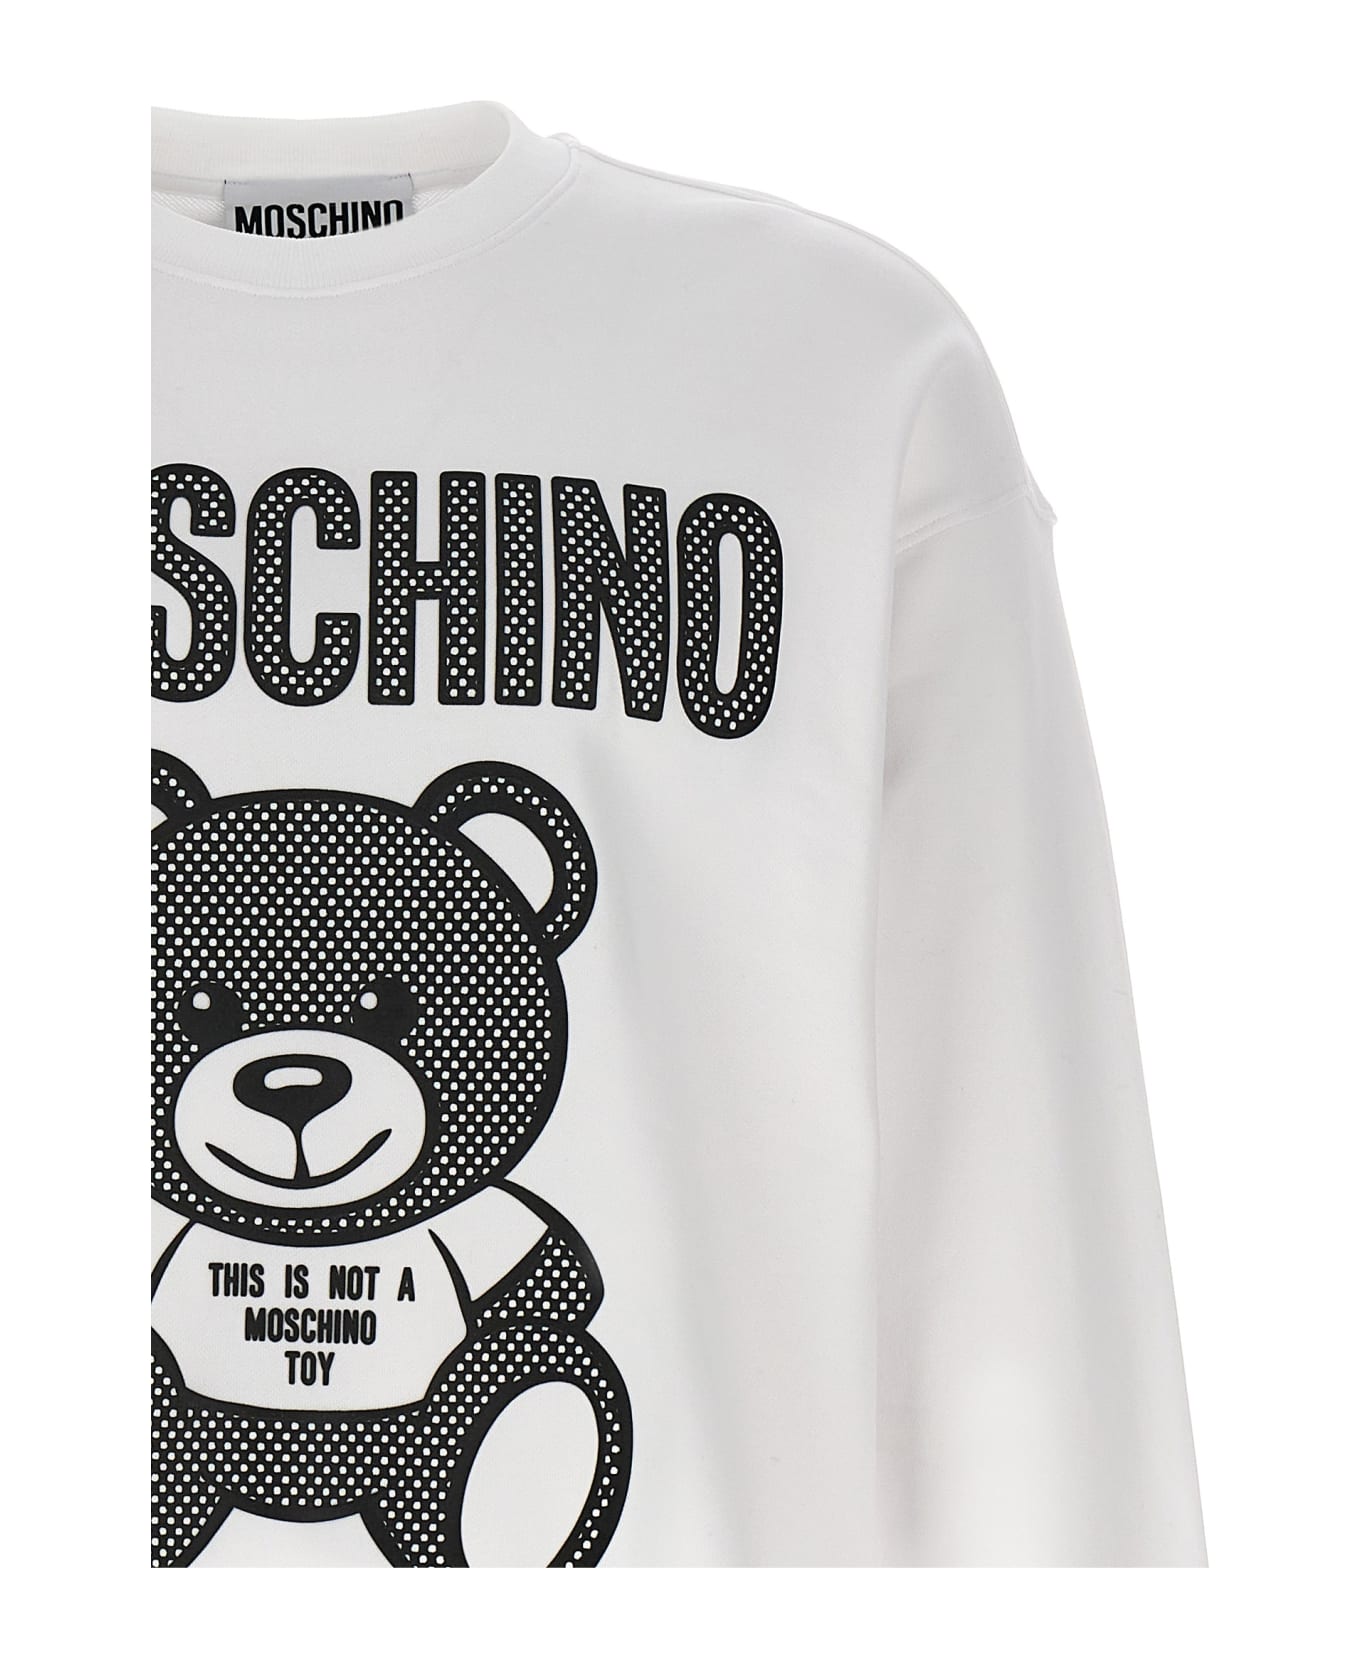 Moschino 'teddy' Sweatshirt - White/Black